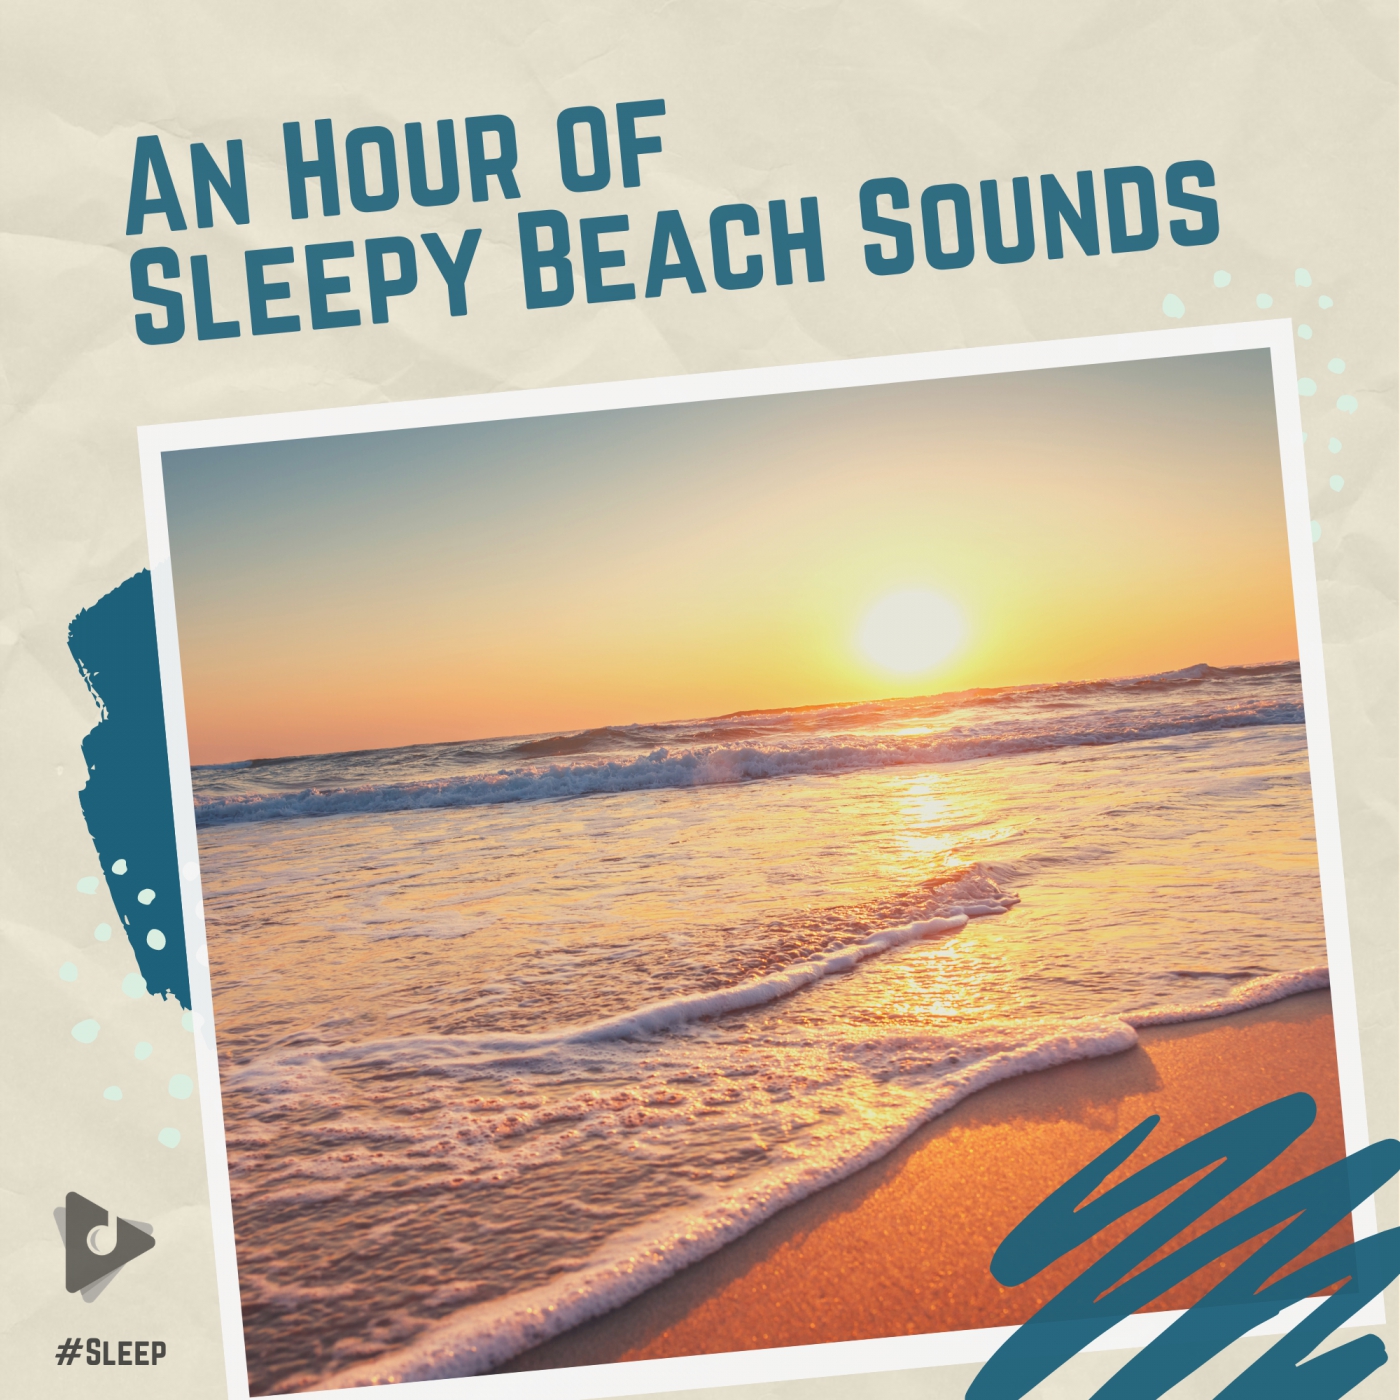 An Hour of Sleepy Beach Sounds